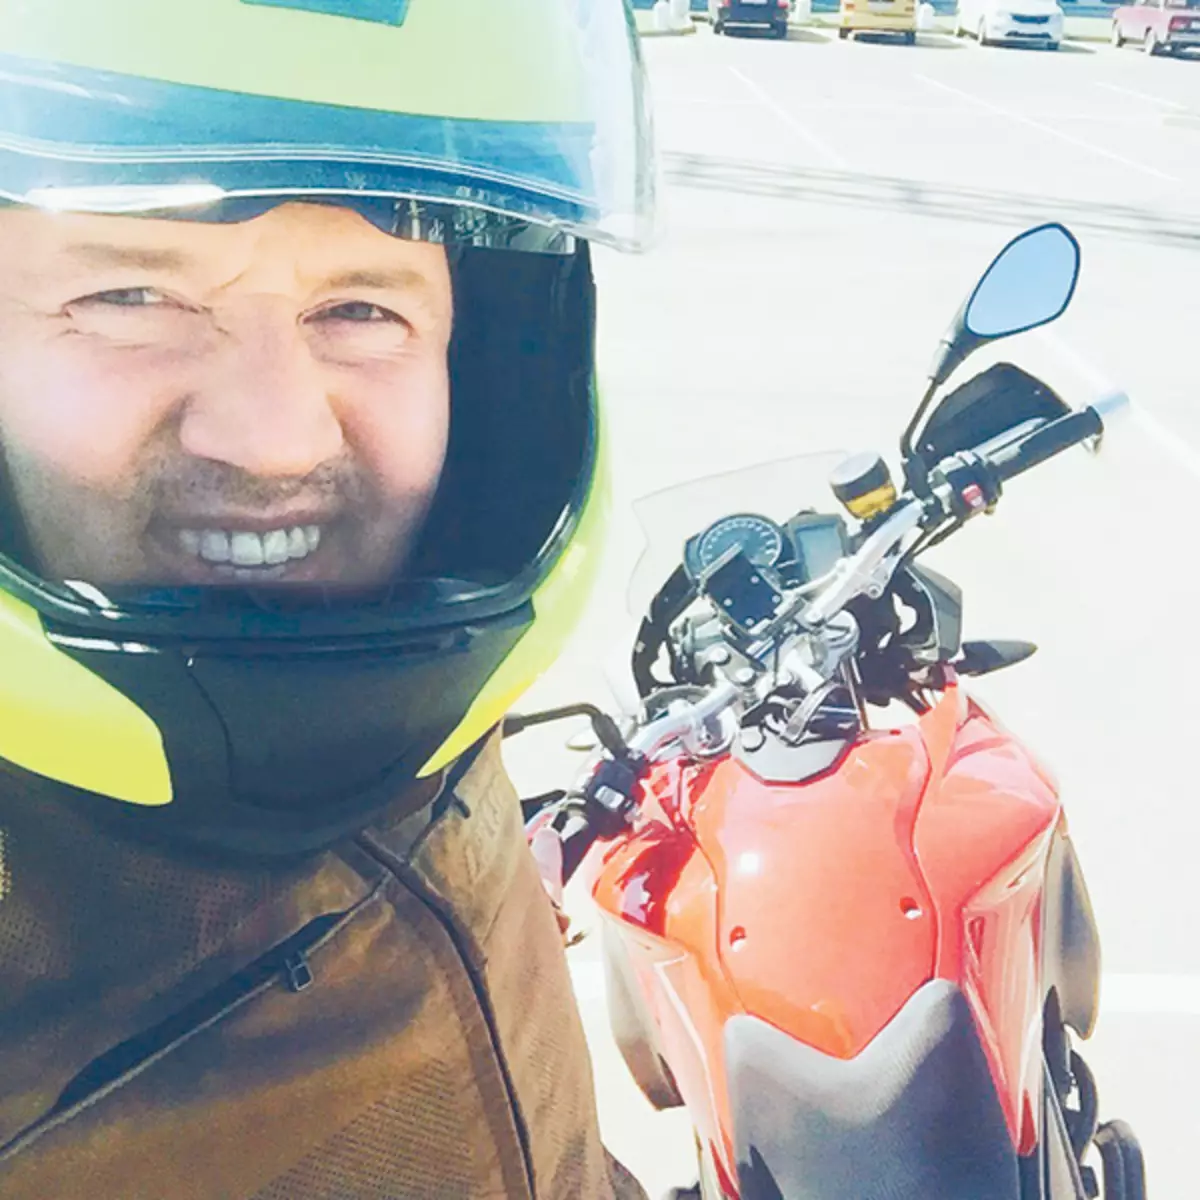 Sergey chámase un motociclista responsable. Non hai carreiras nocturnas